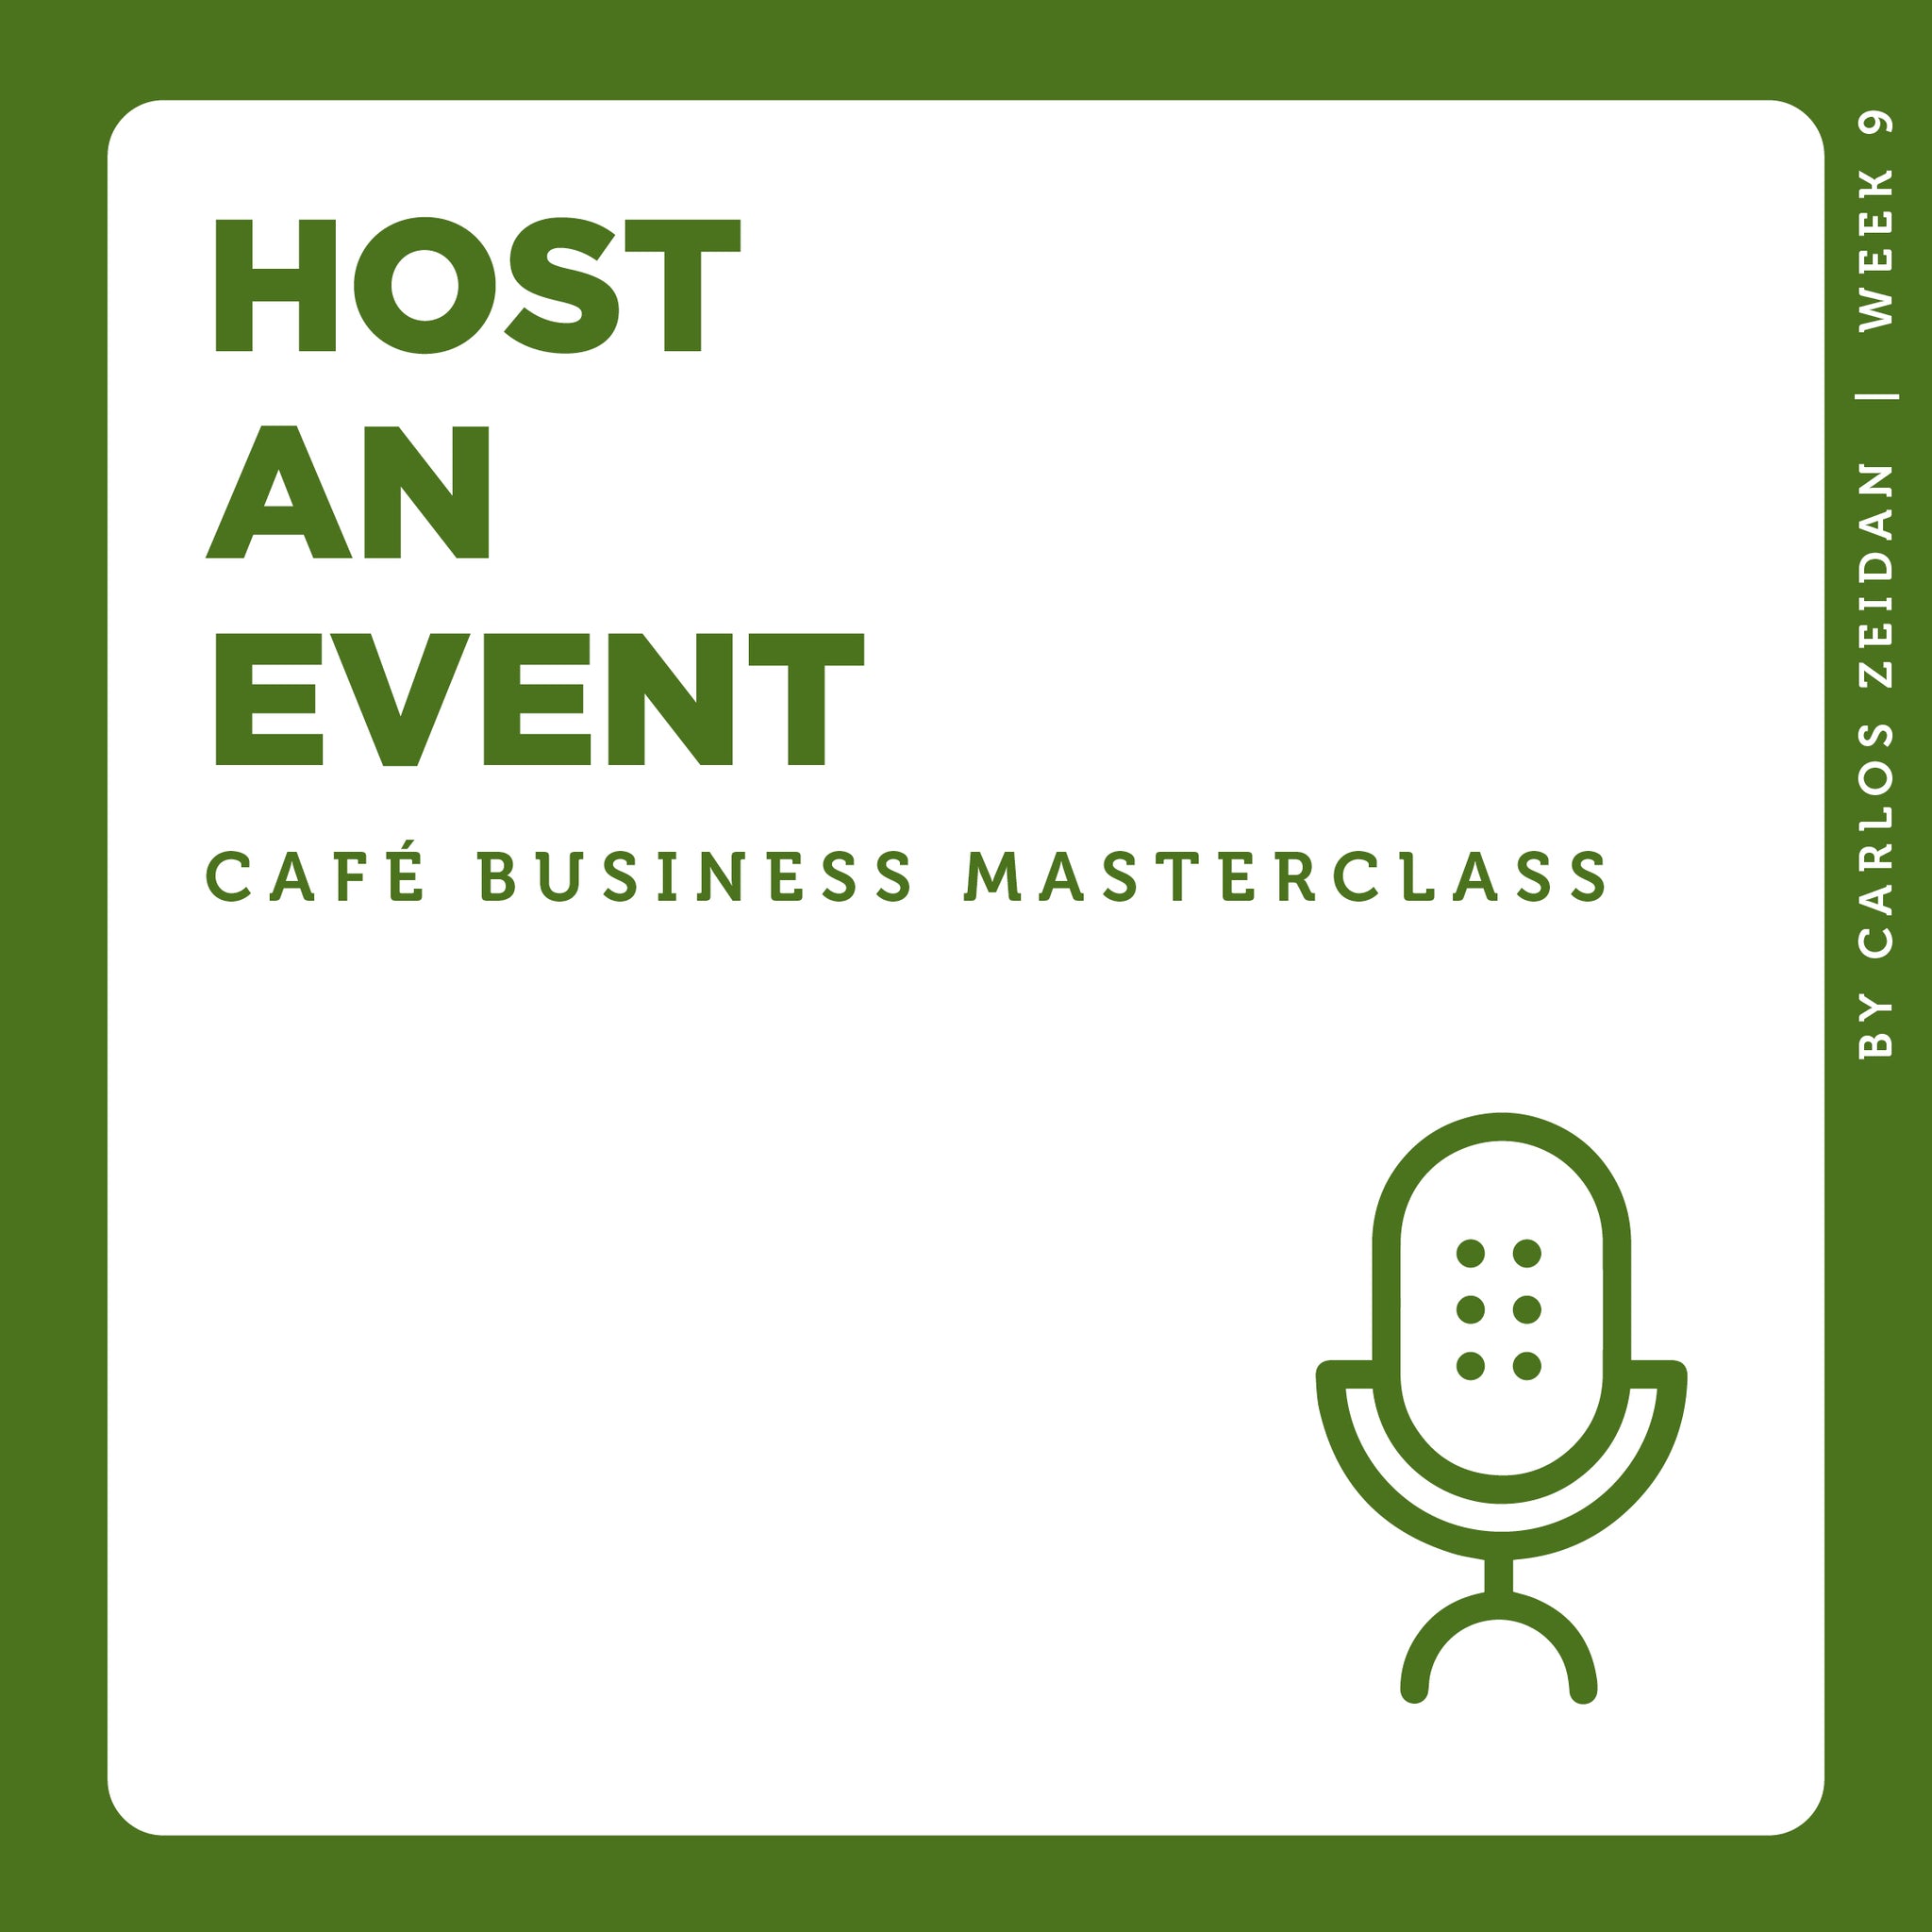 Café Business Masterclass: Host an Event